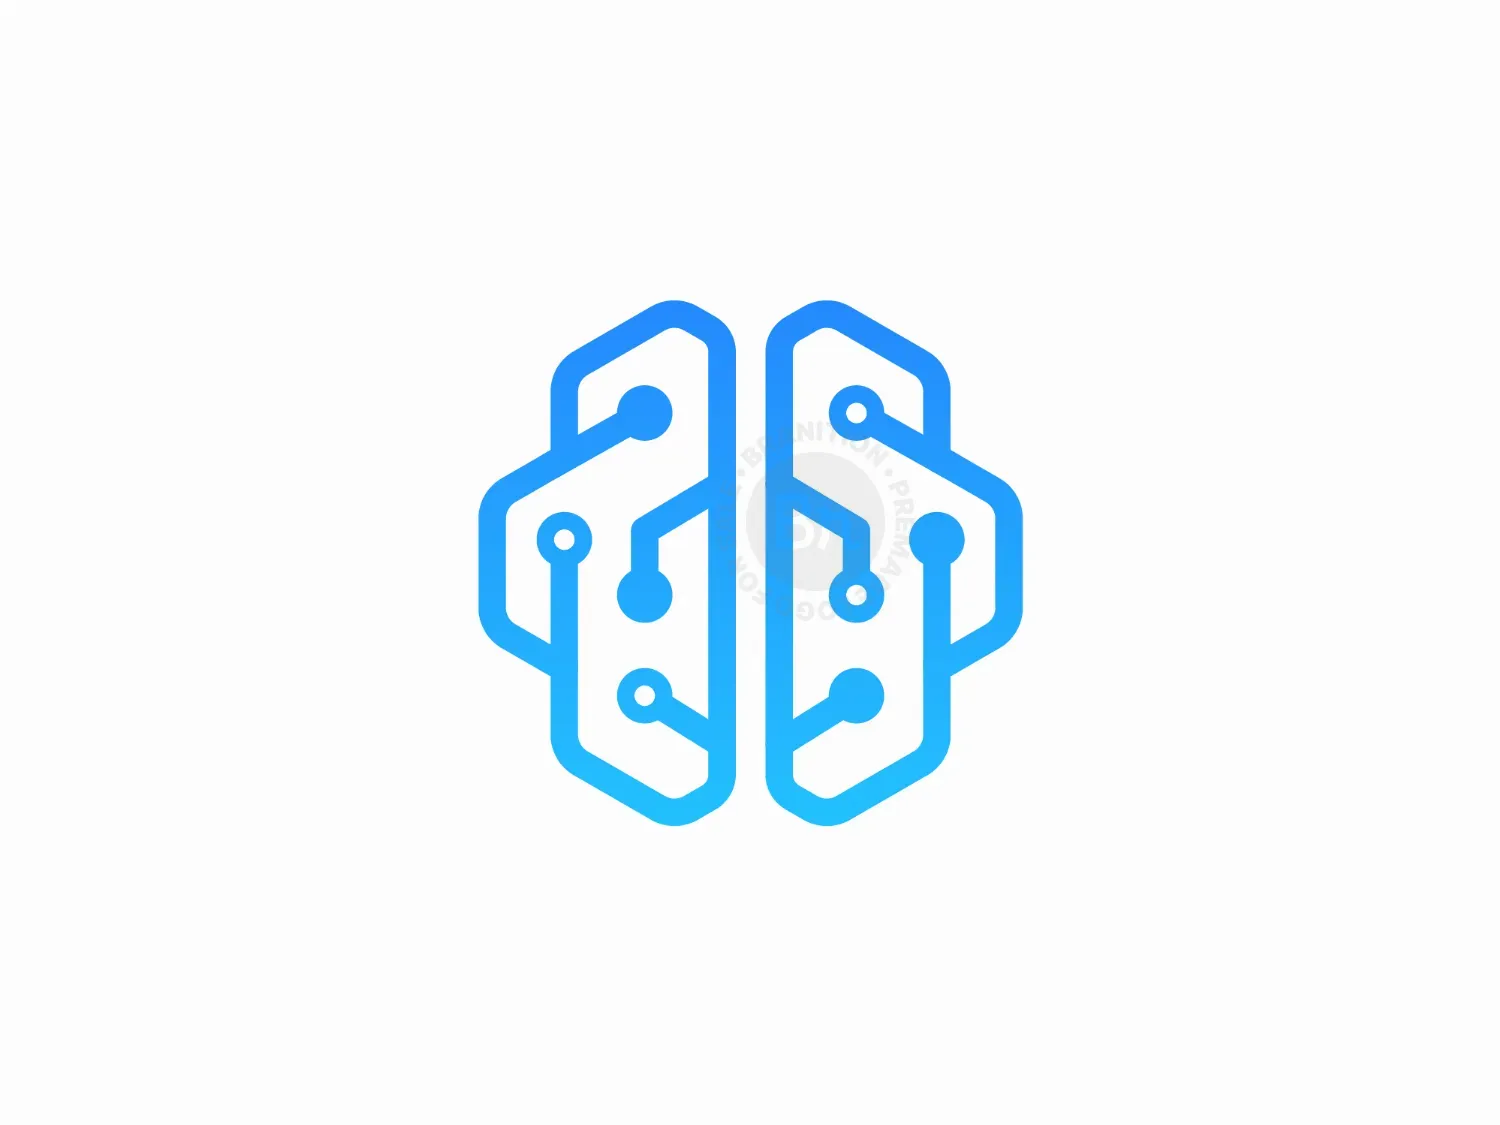 Brain Tech Logo